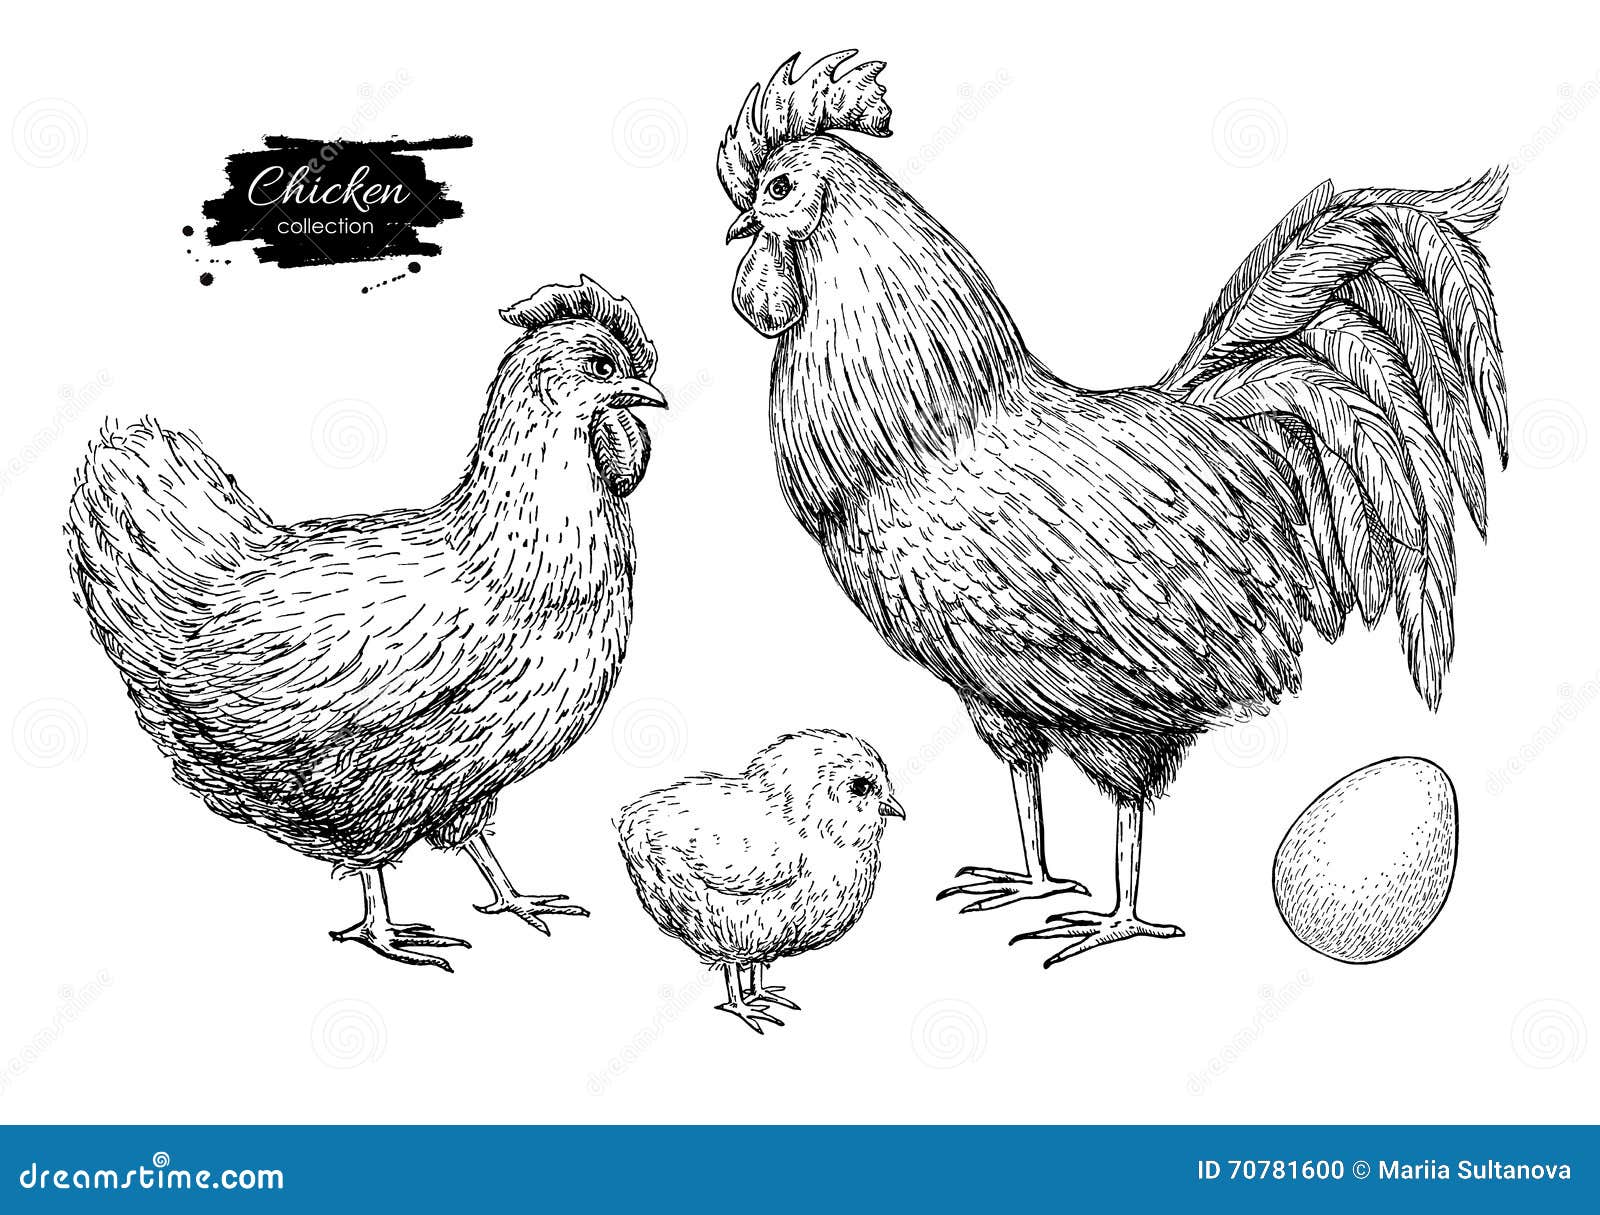  chicken breeding hand drawn set. engraved chicken, roster